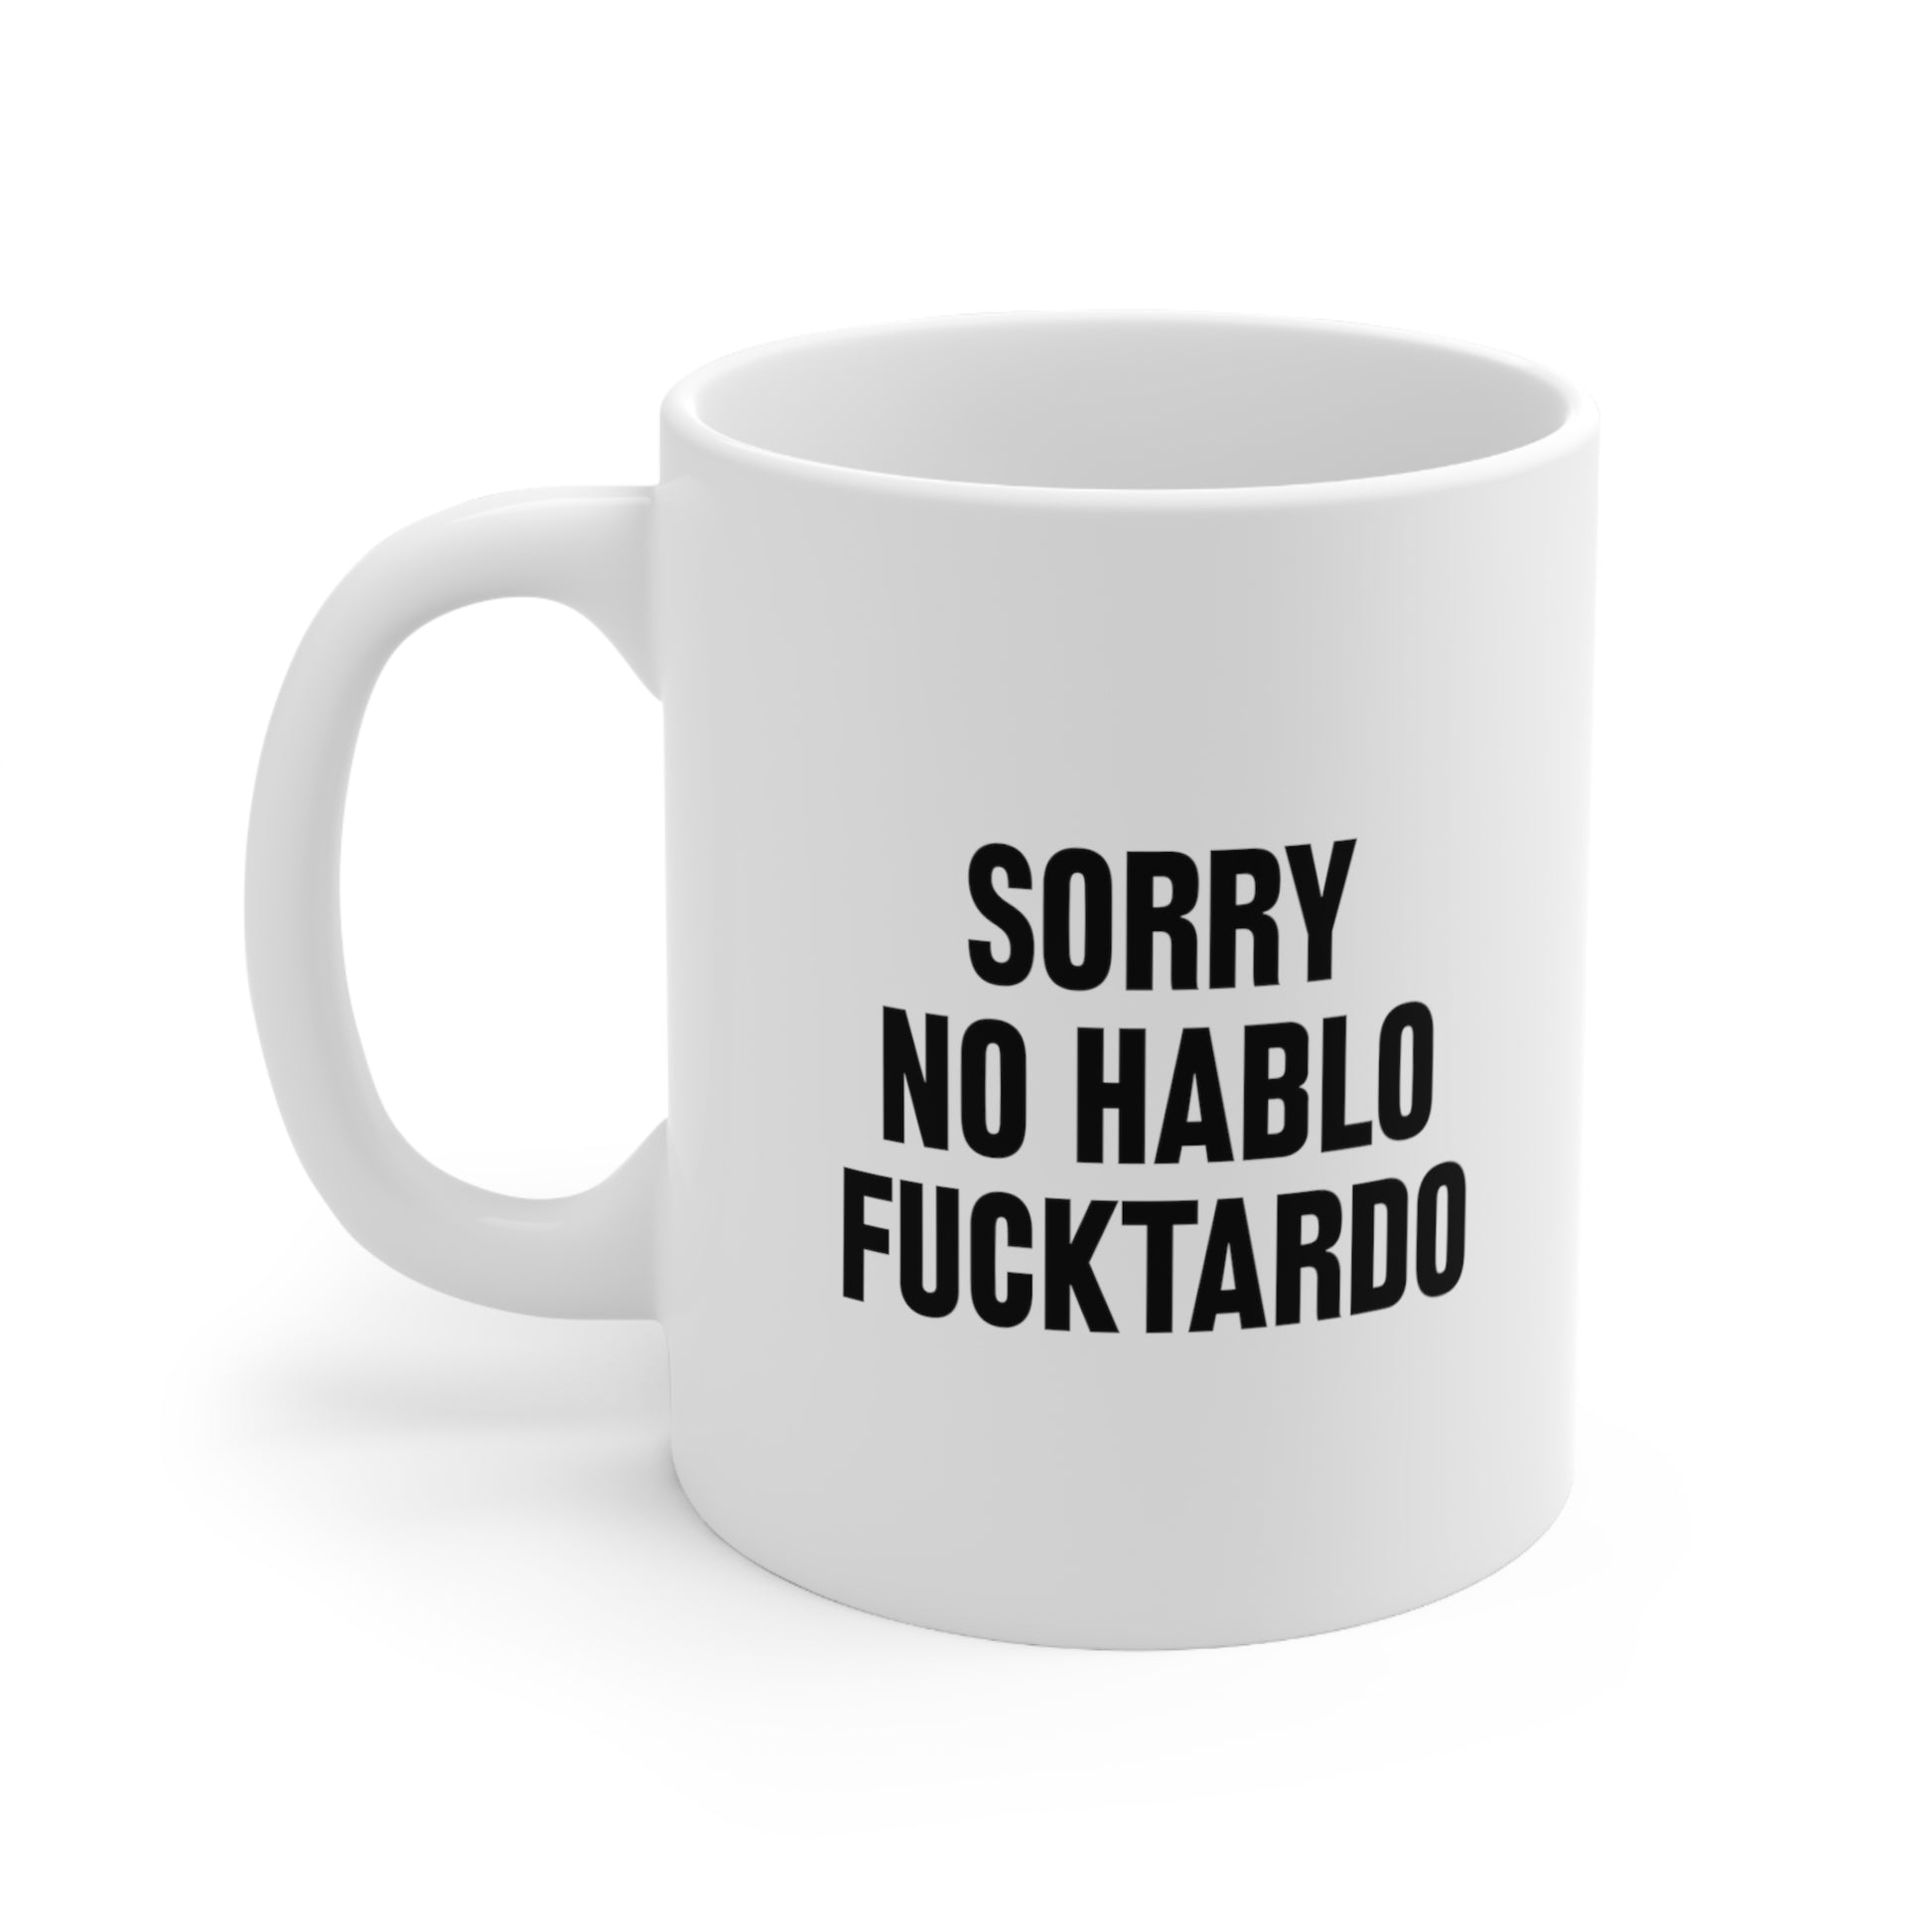 Sorry no hablo fucktardo Coffee Mug